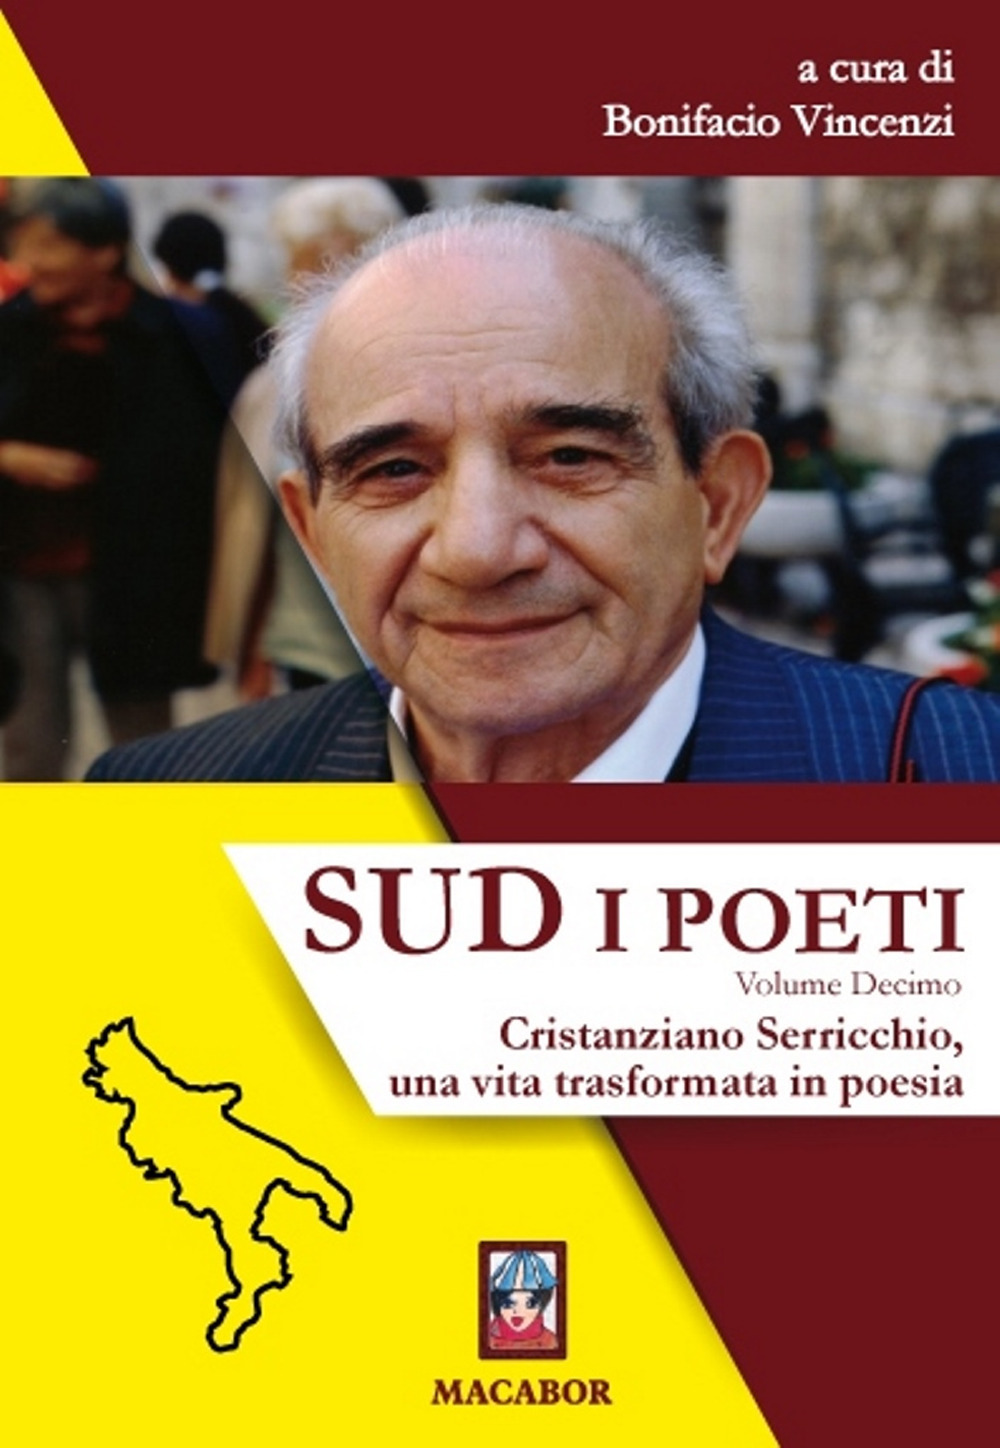 Libri Sud. I Poeti Vol 10 NUOVO SIGILLATO, EDIZIONE DEL 25/04/2021 SUBITO DISPONIBILE